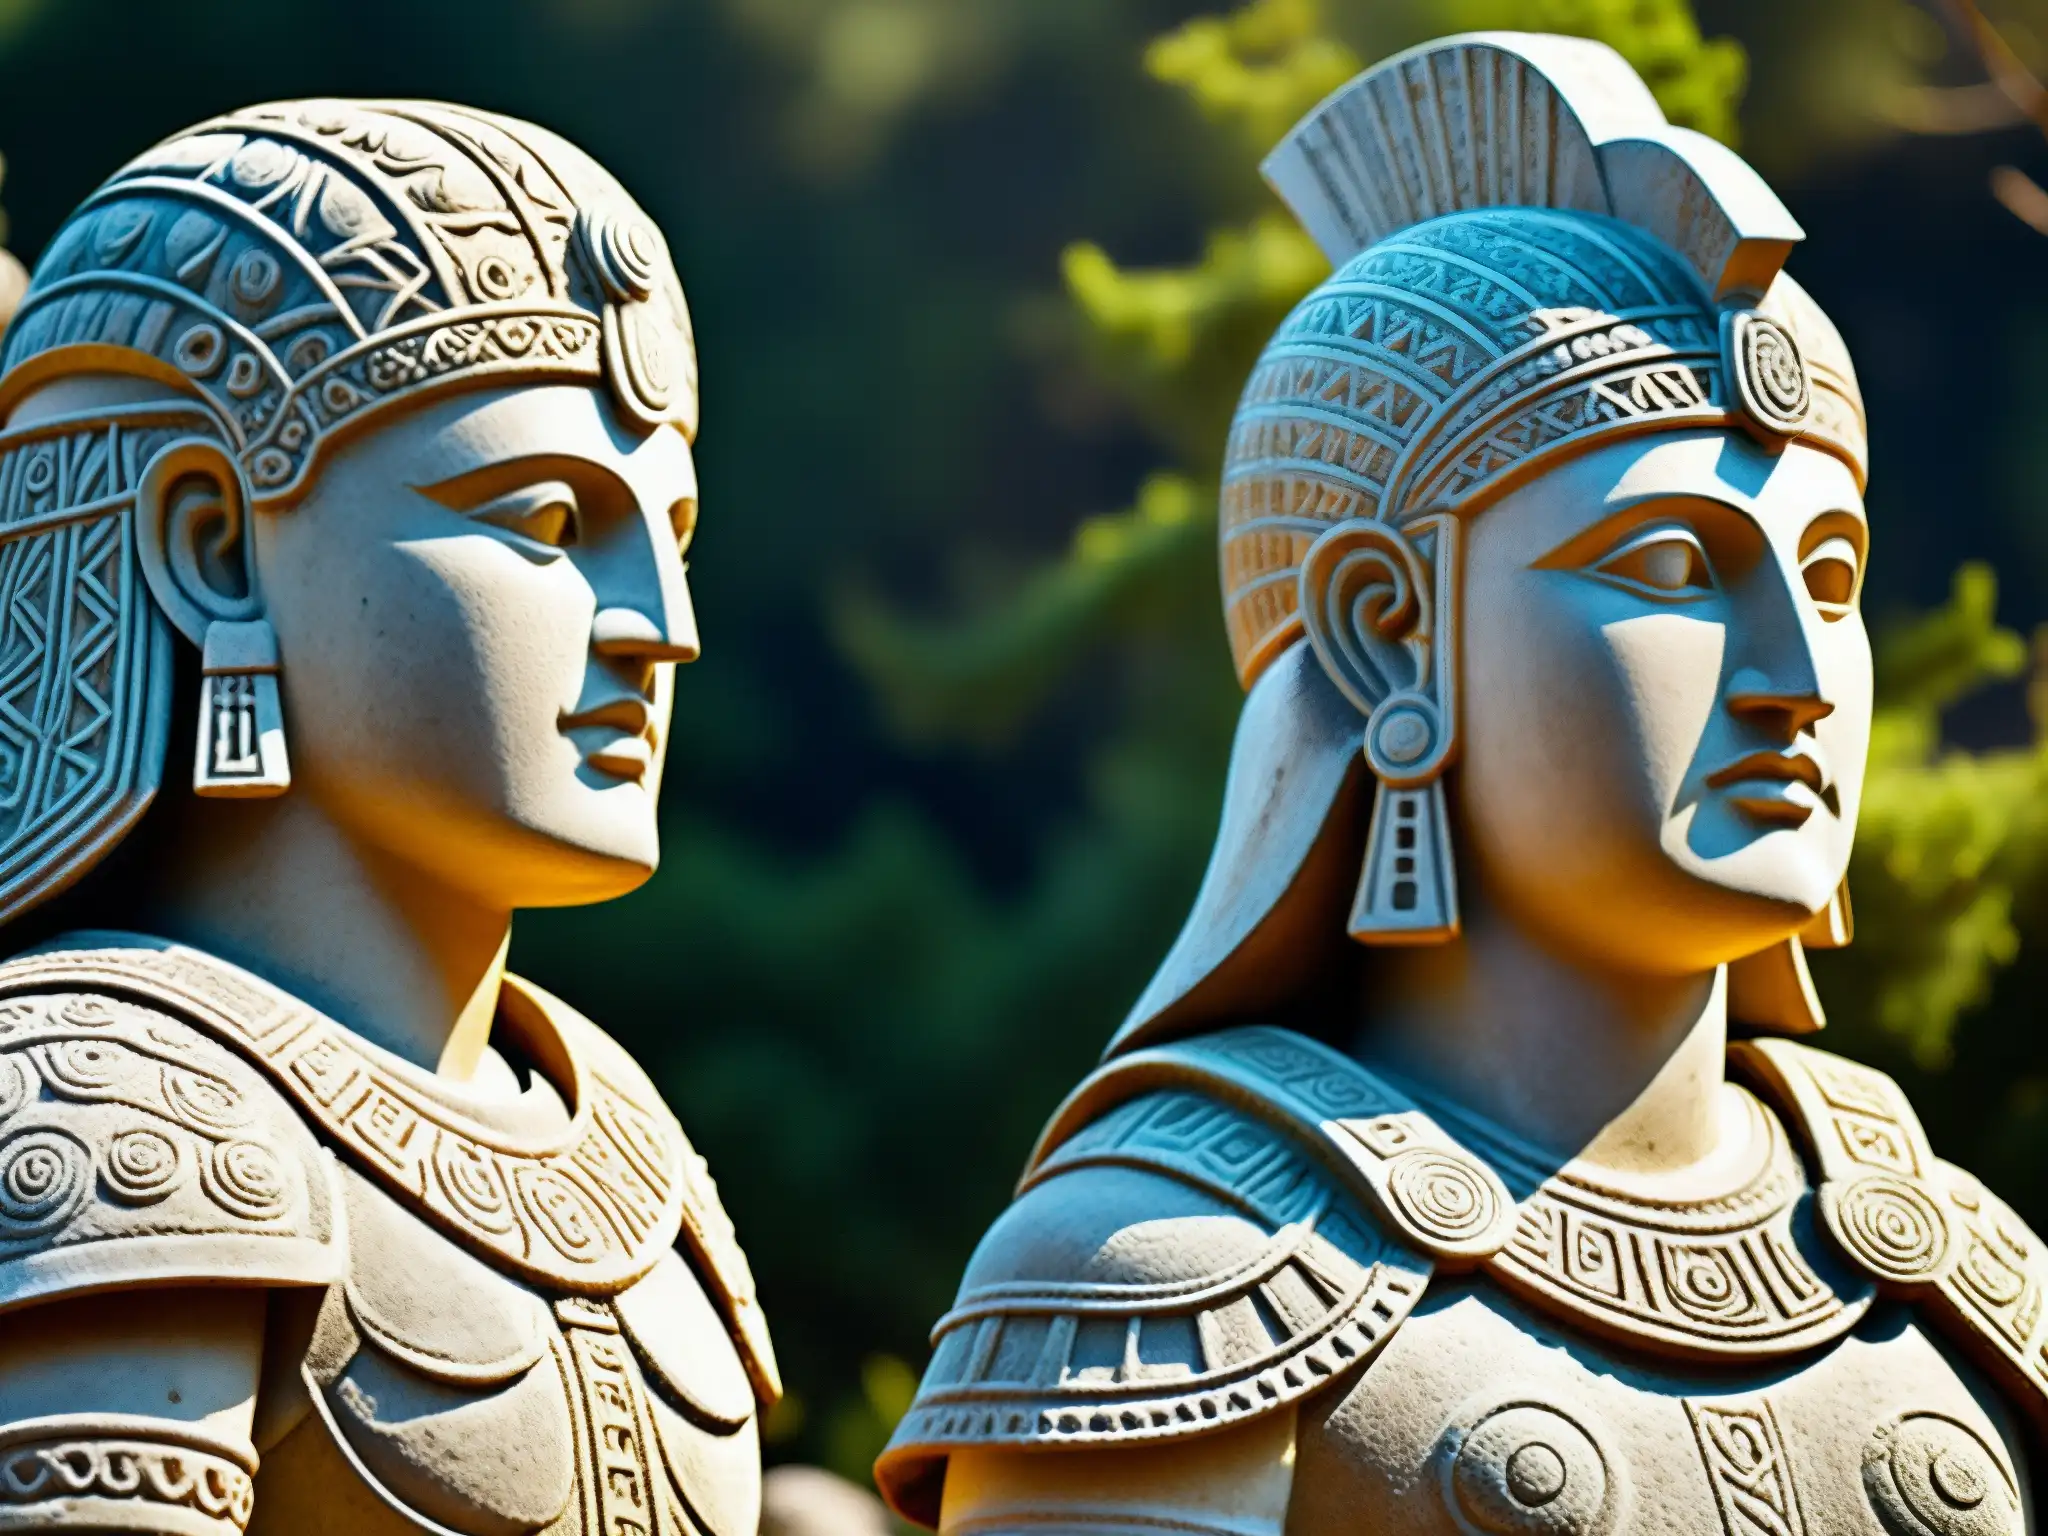 Los Guardianes petrificados de Tula emergen, con detalles esculpidos en piedra y el paso del tiempo